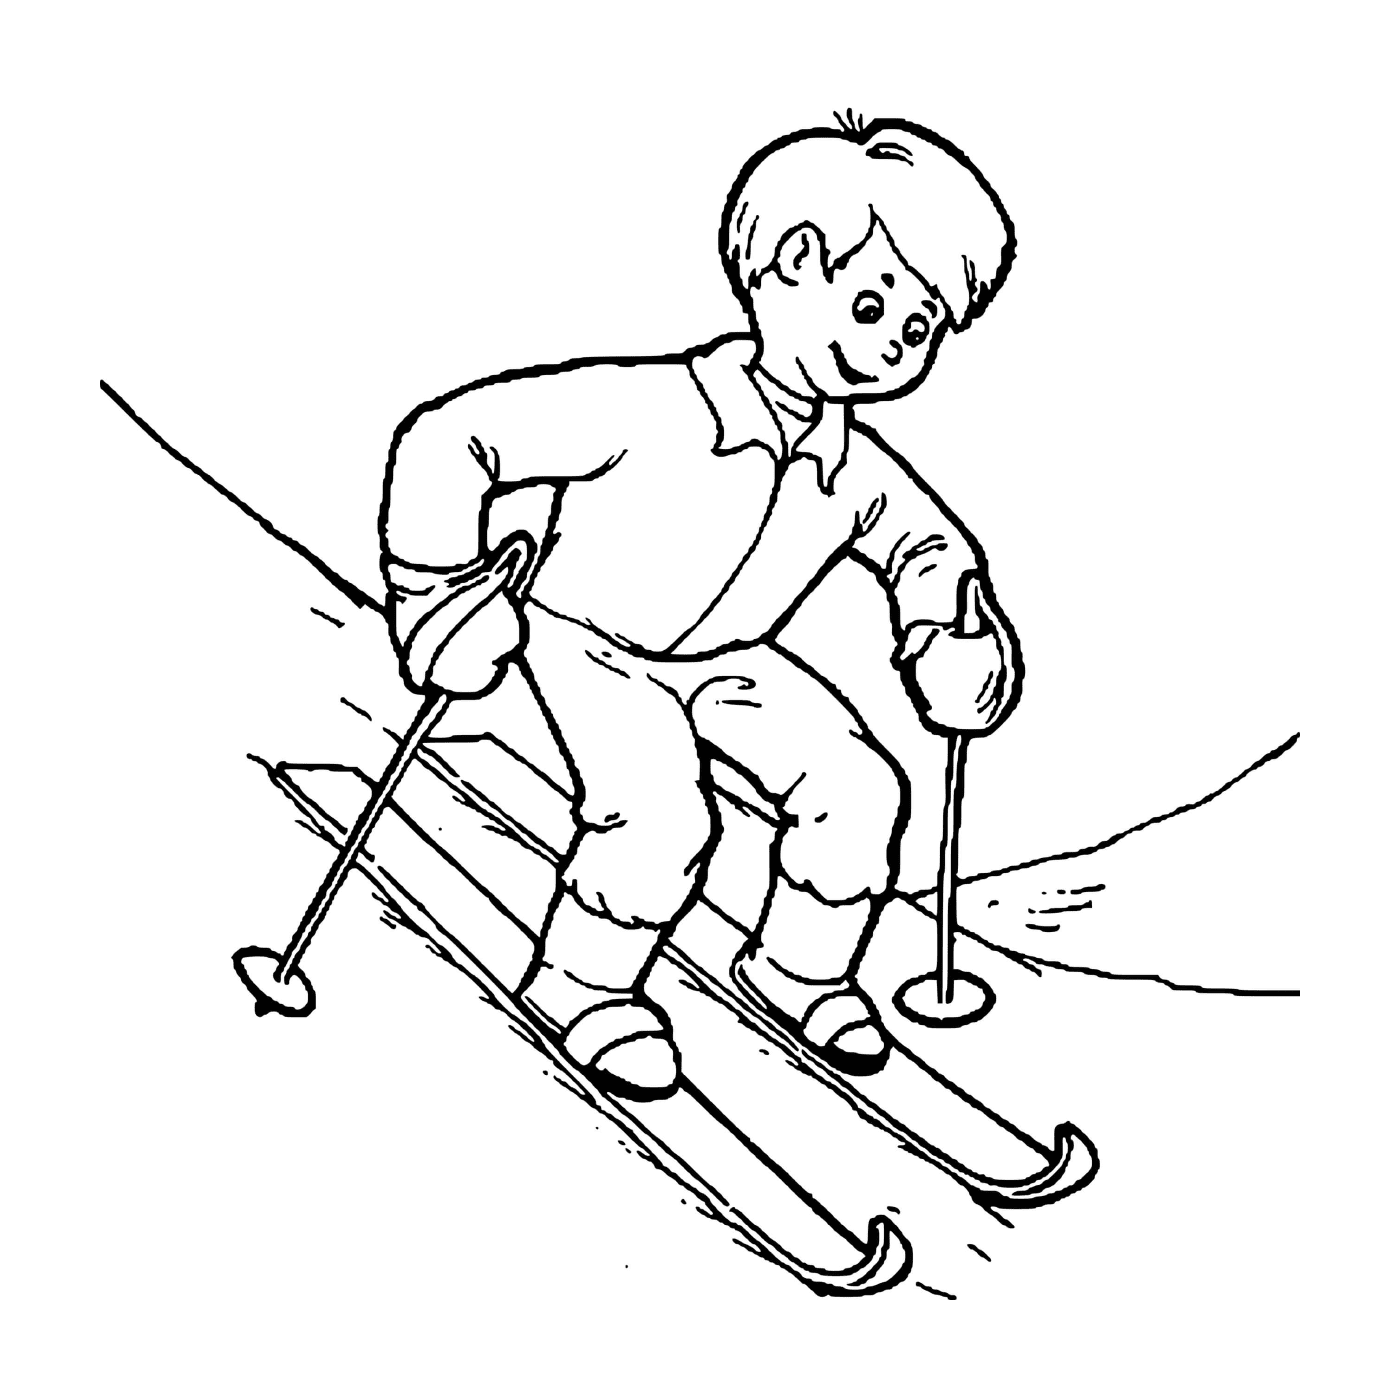  Criança aprende esqui entusiasmada 